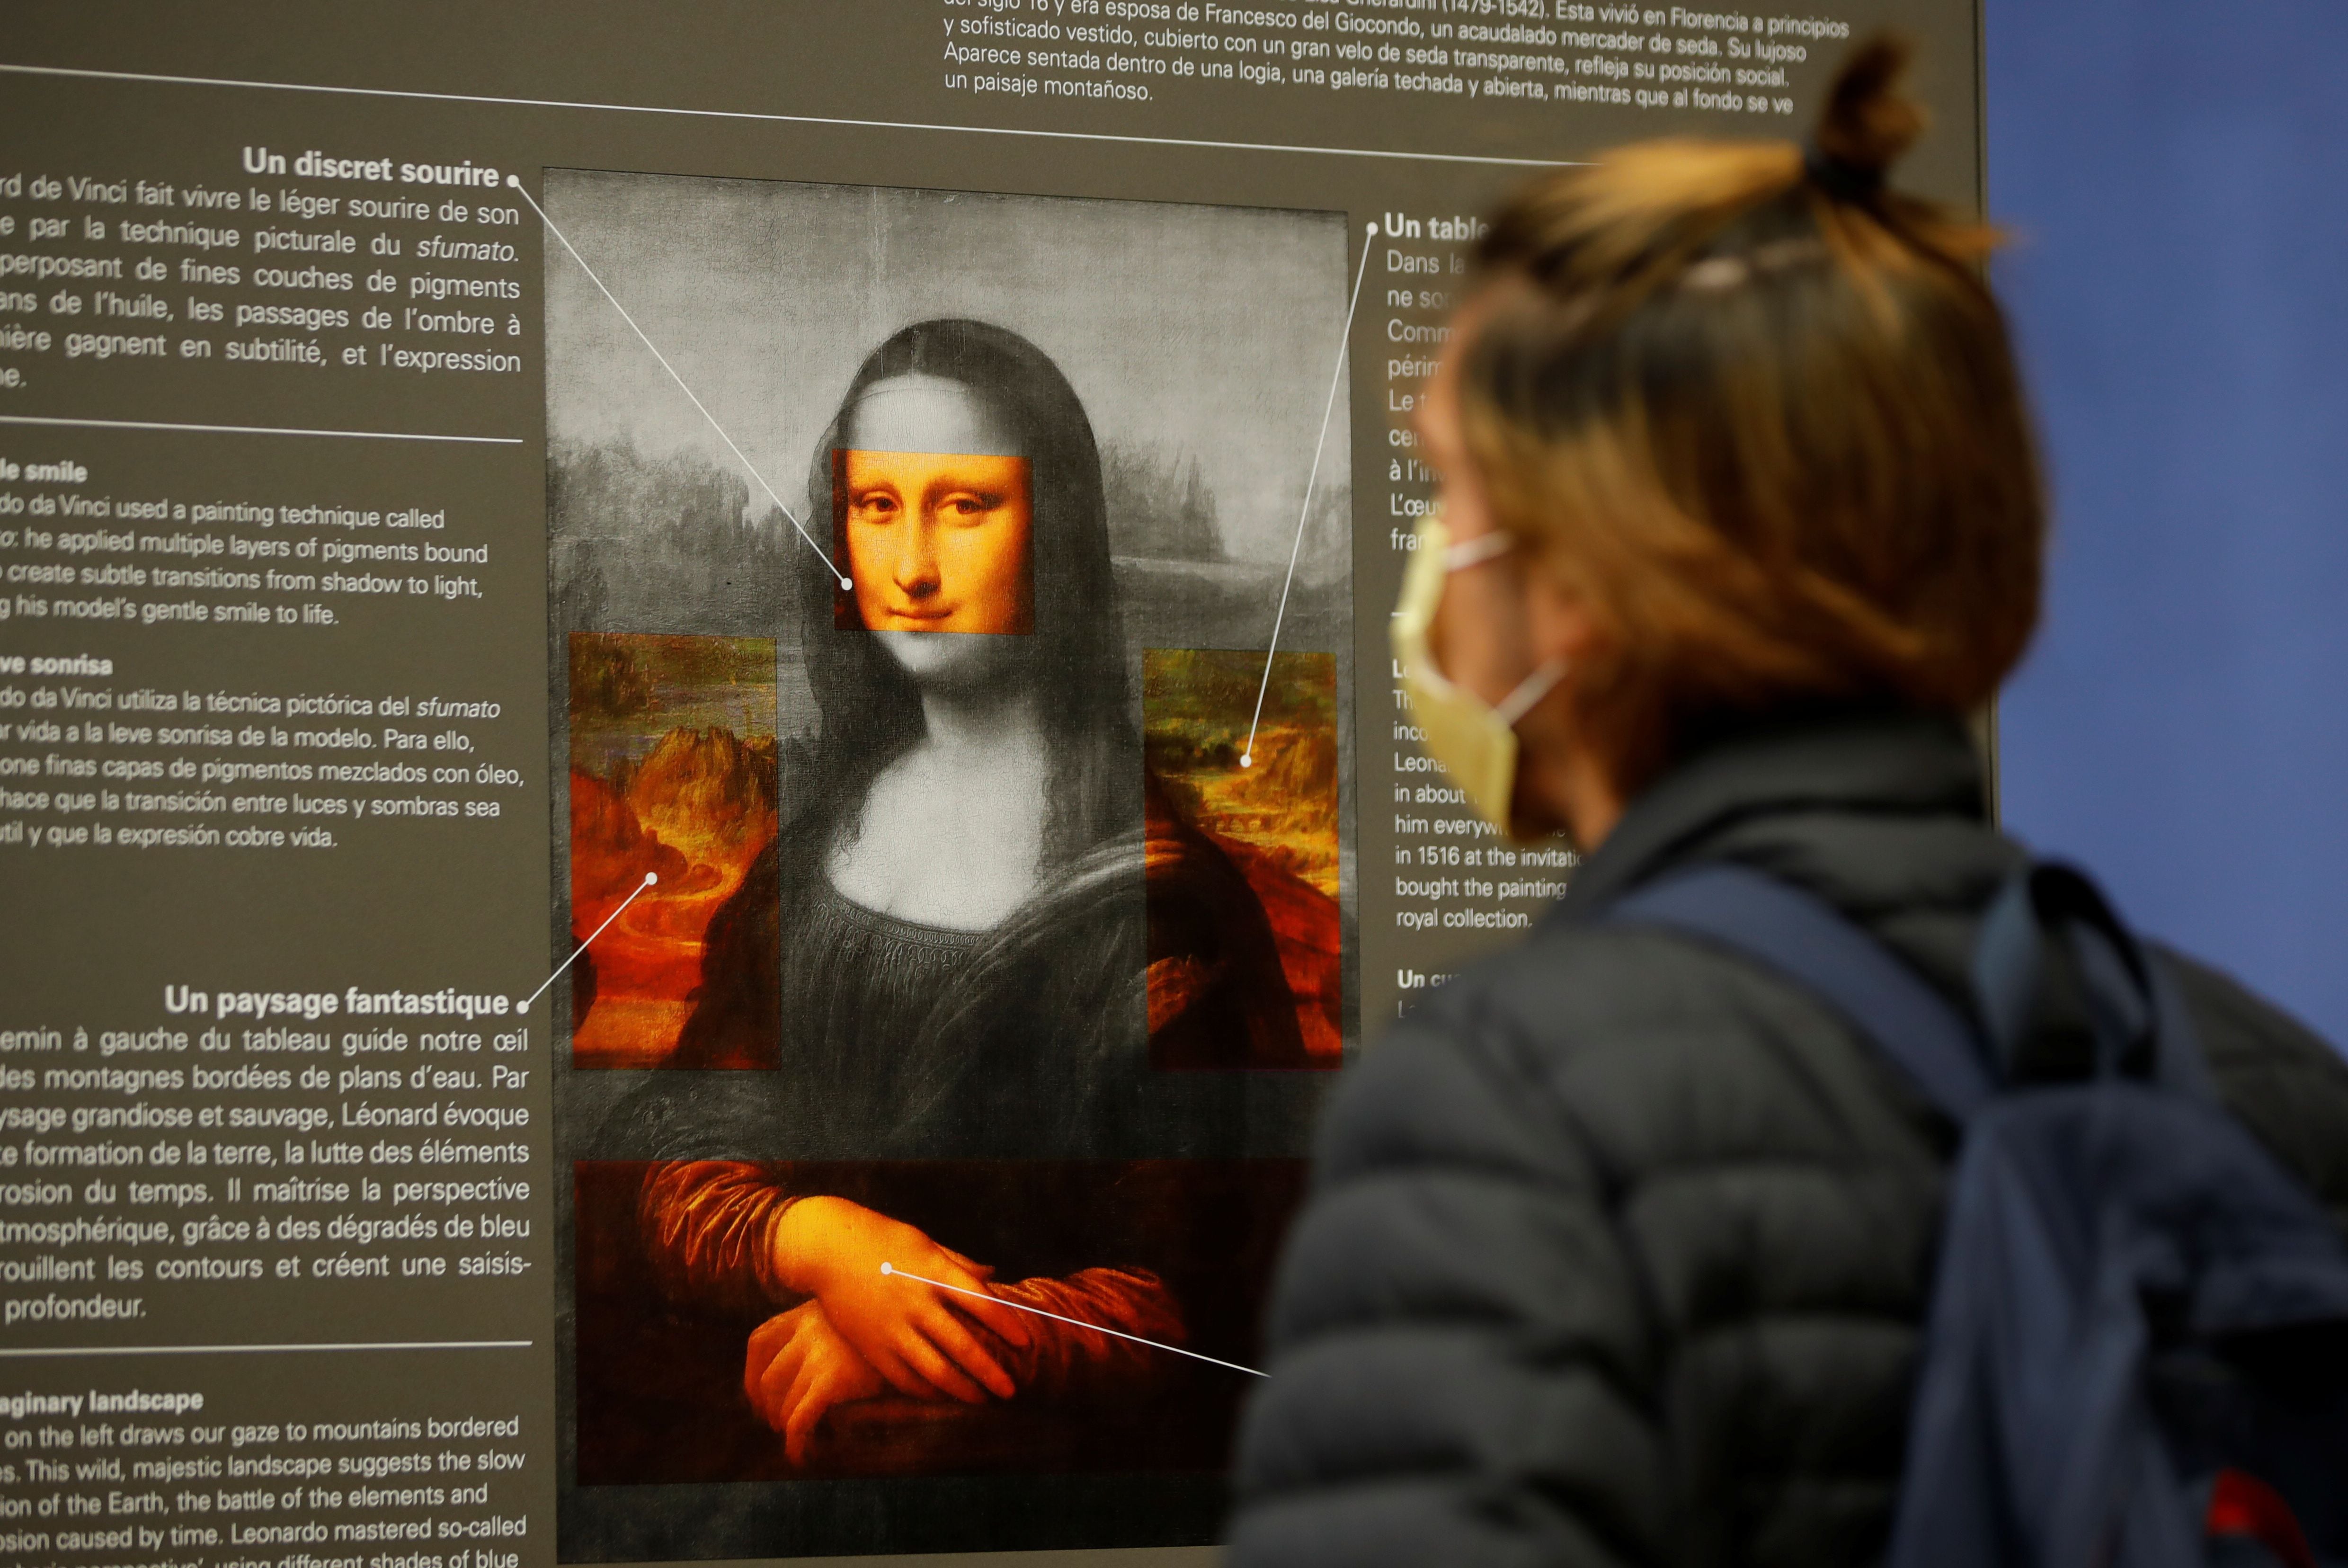 Un visitante, con una mascarilla protectora, mira un cartel con explicaciones sobre el cuadro "Mona Lisa" (La Joconde) de Leonardo Da Vinci en el museo del Louvre de París. REUTERS/Sarah Meyssonnier